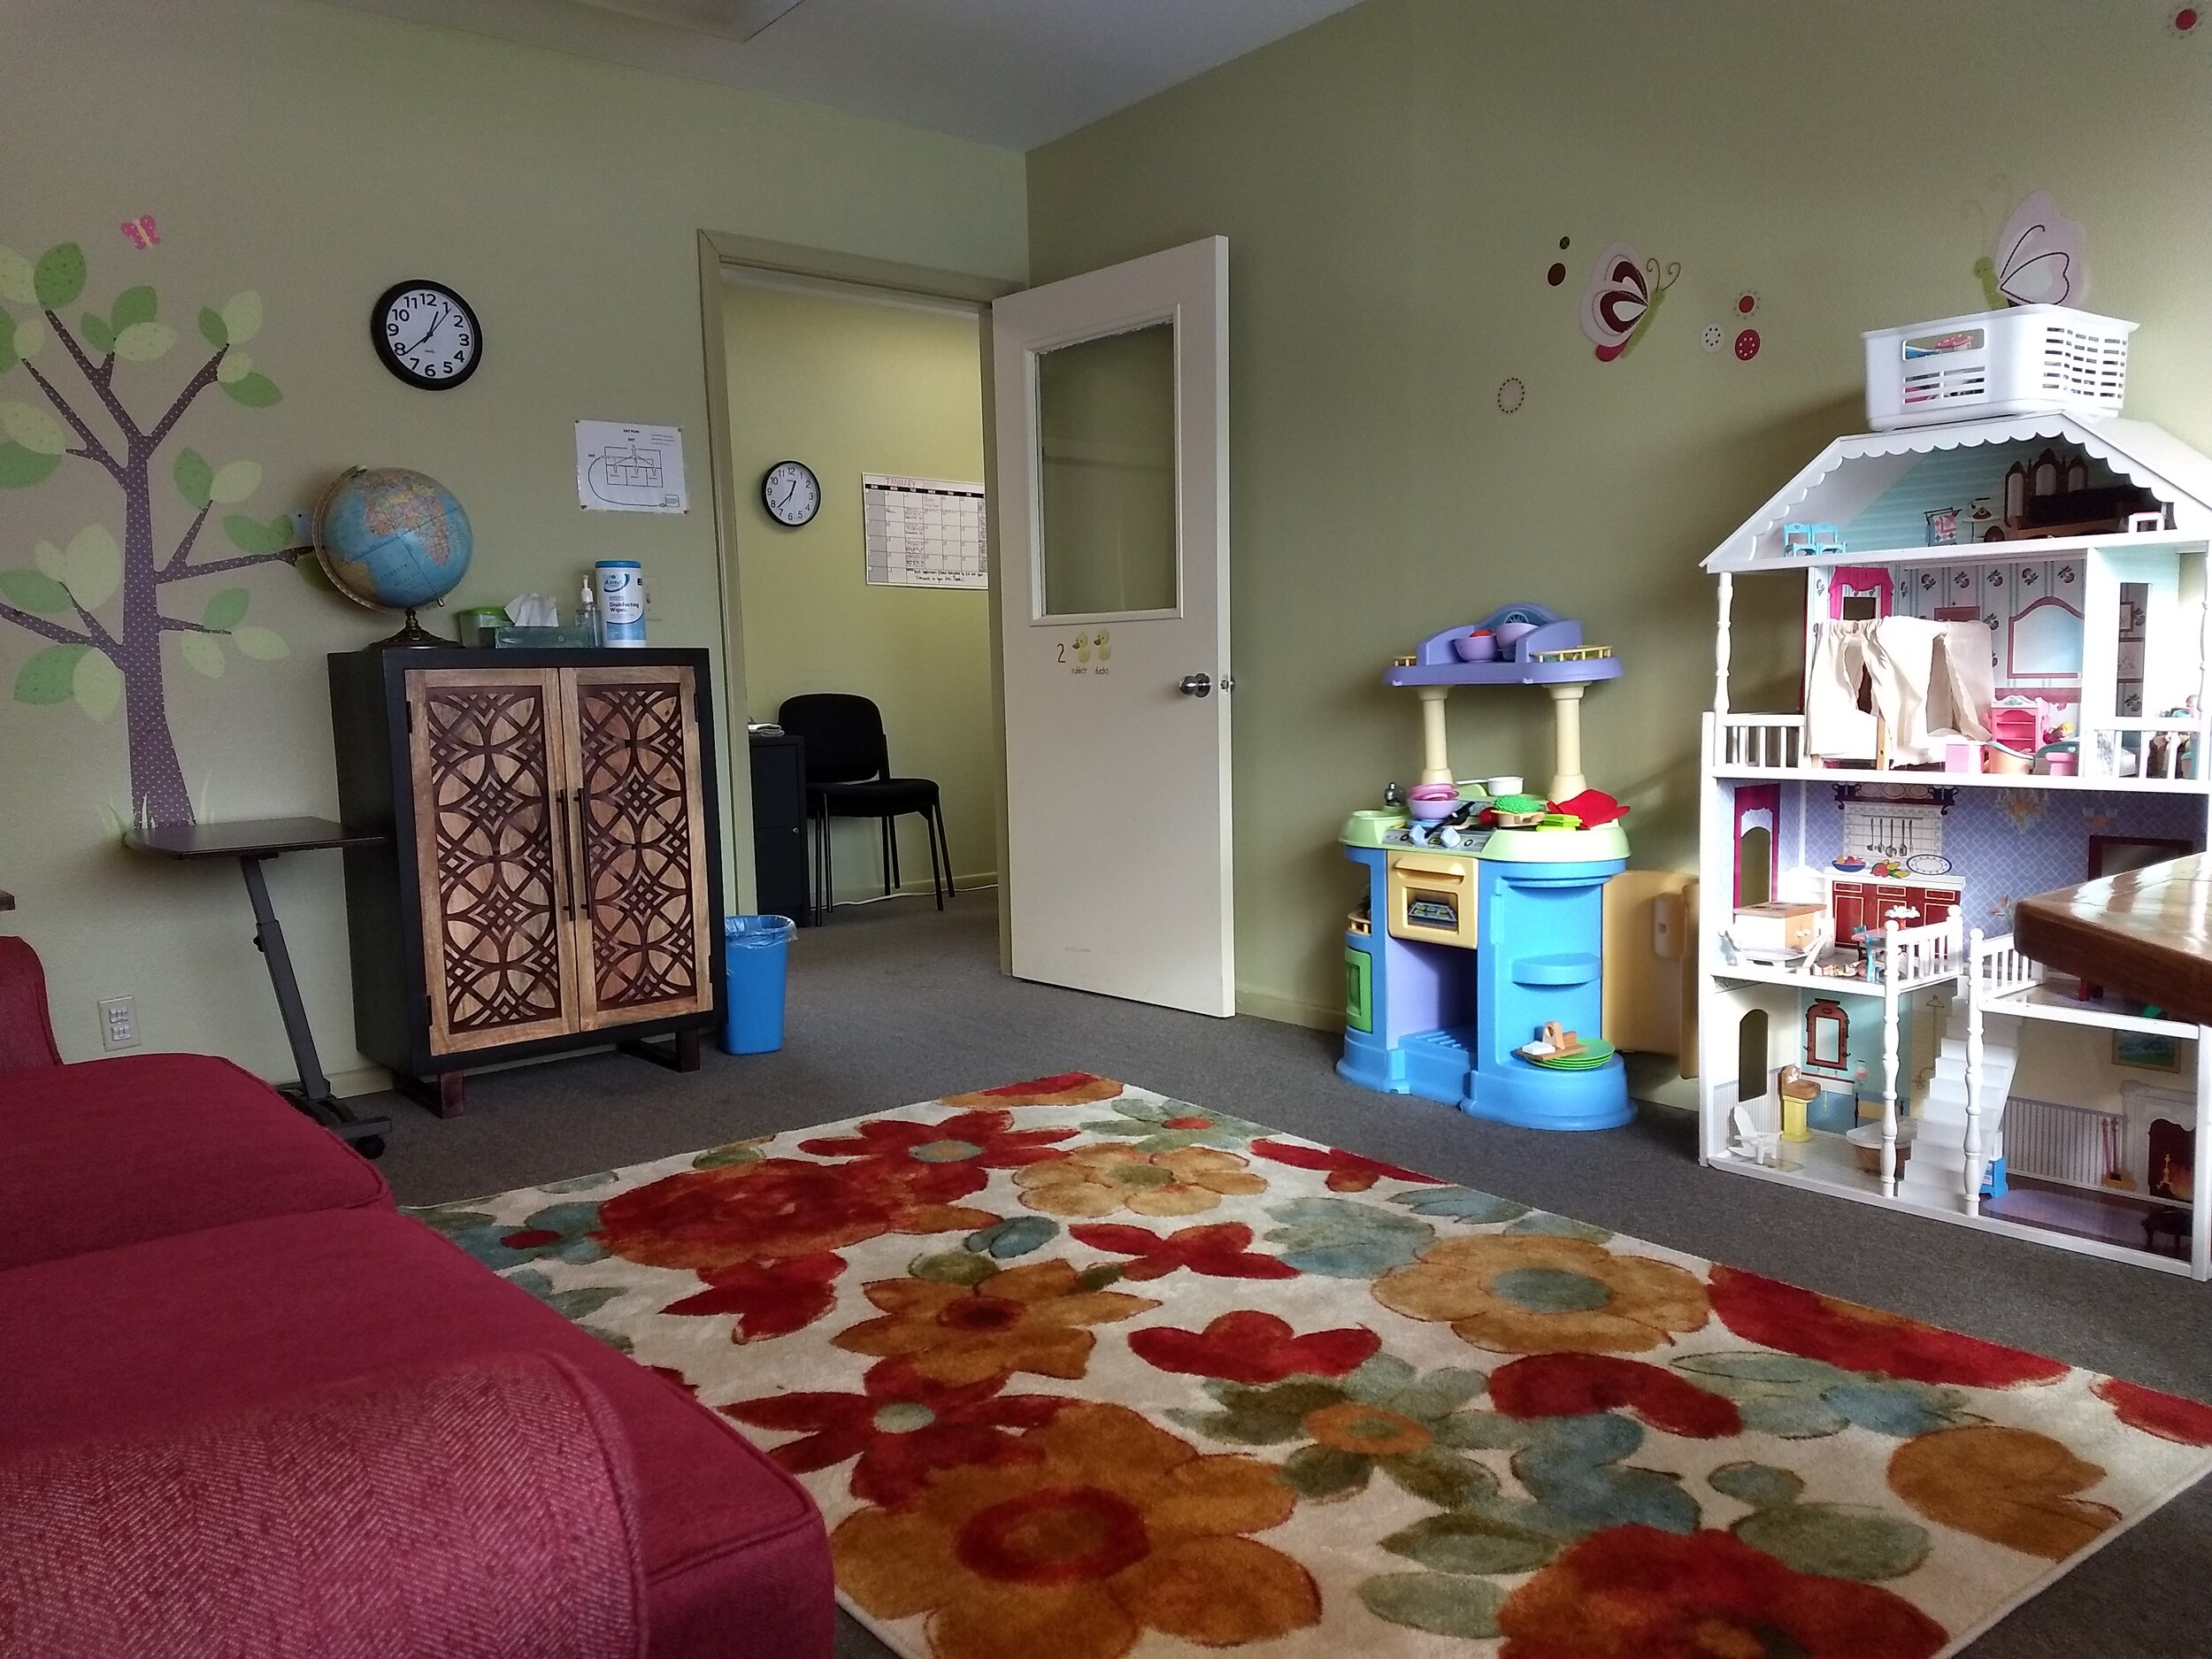 красочное изображение комнаты для свиданий под присмотром, полной игрушек и украшений